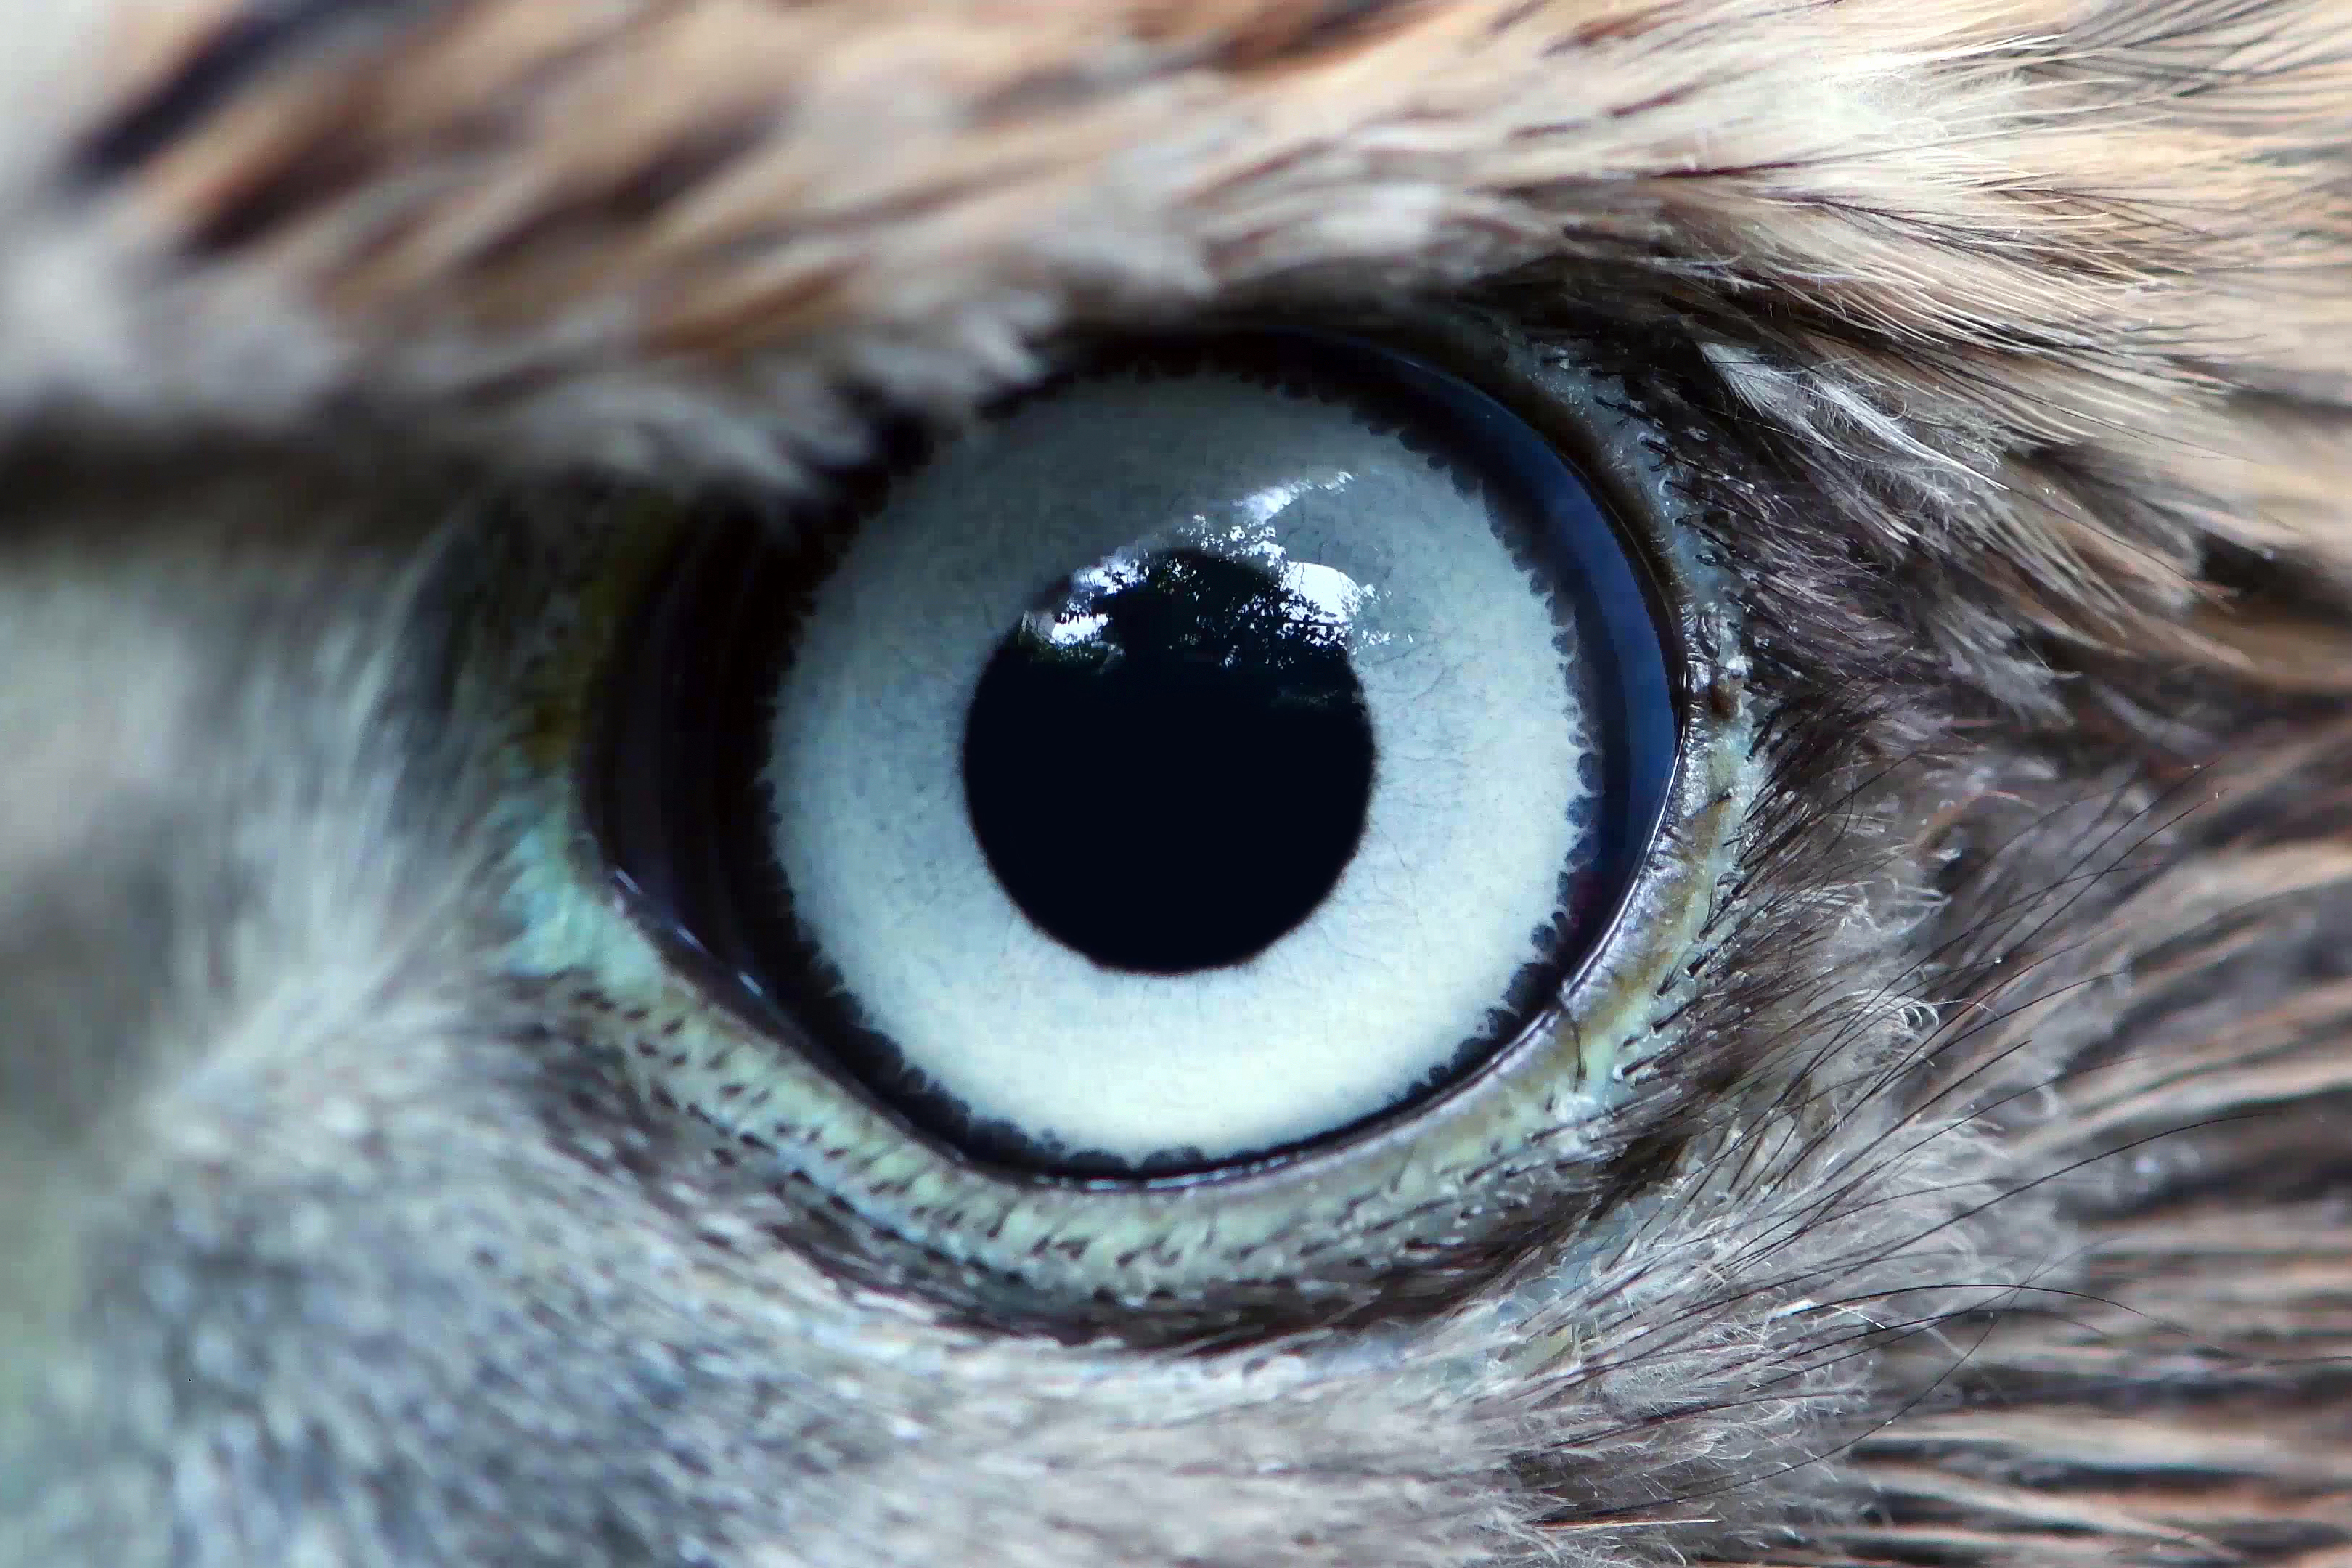 Eagle eye close-up, macro, eye of young Goshawk (Accipiter gentilis).